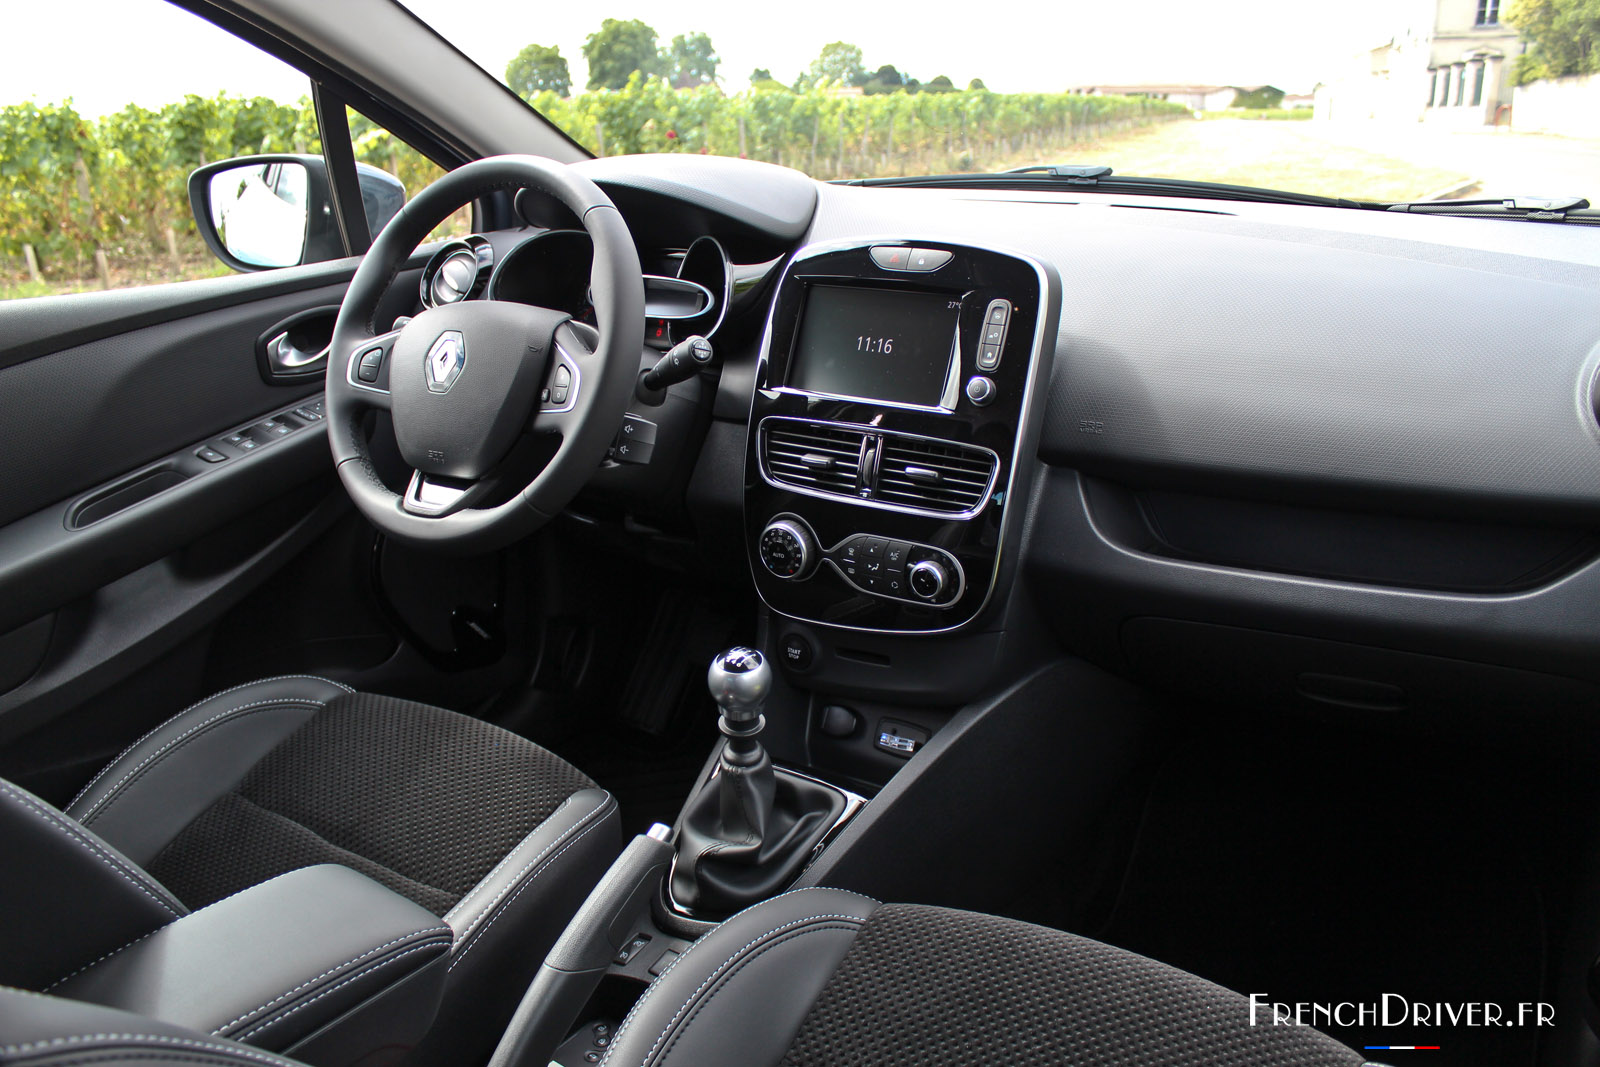 Renault Clio 4 restylée: présentation, actu, essais, photos